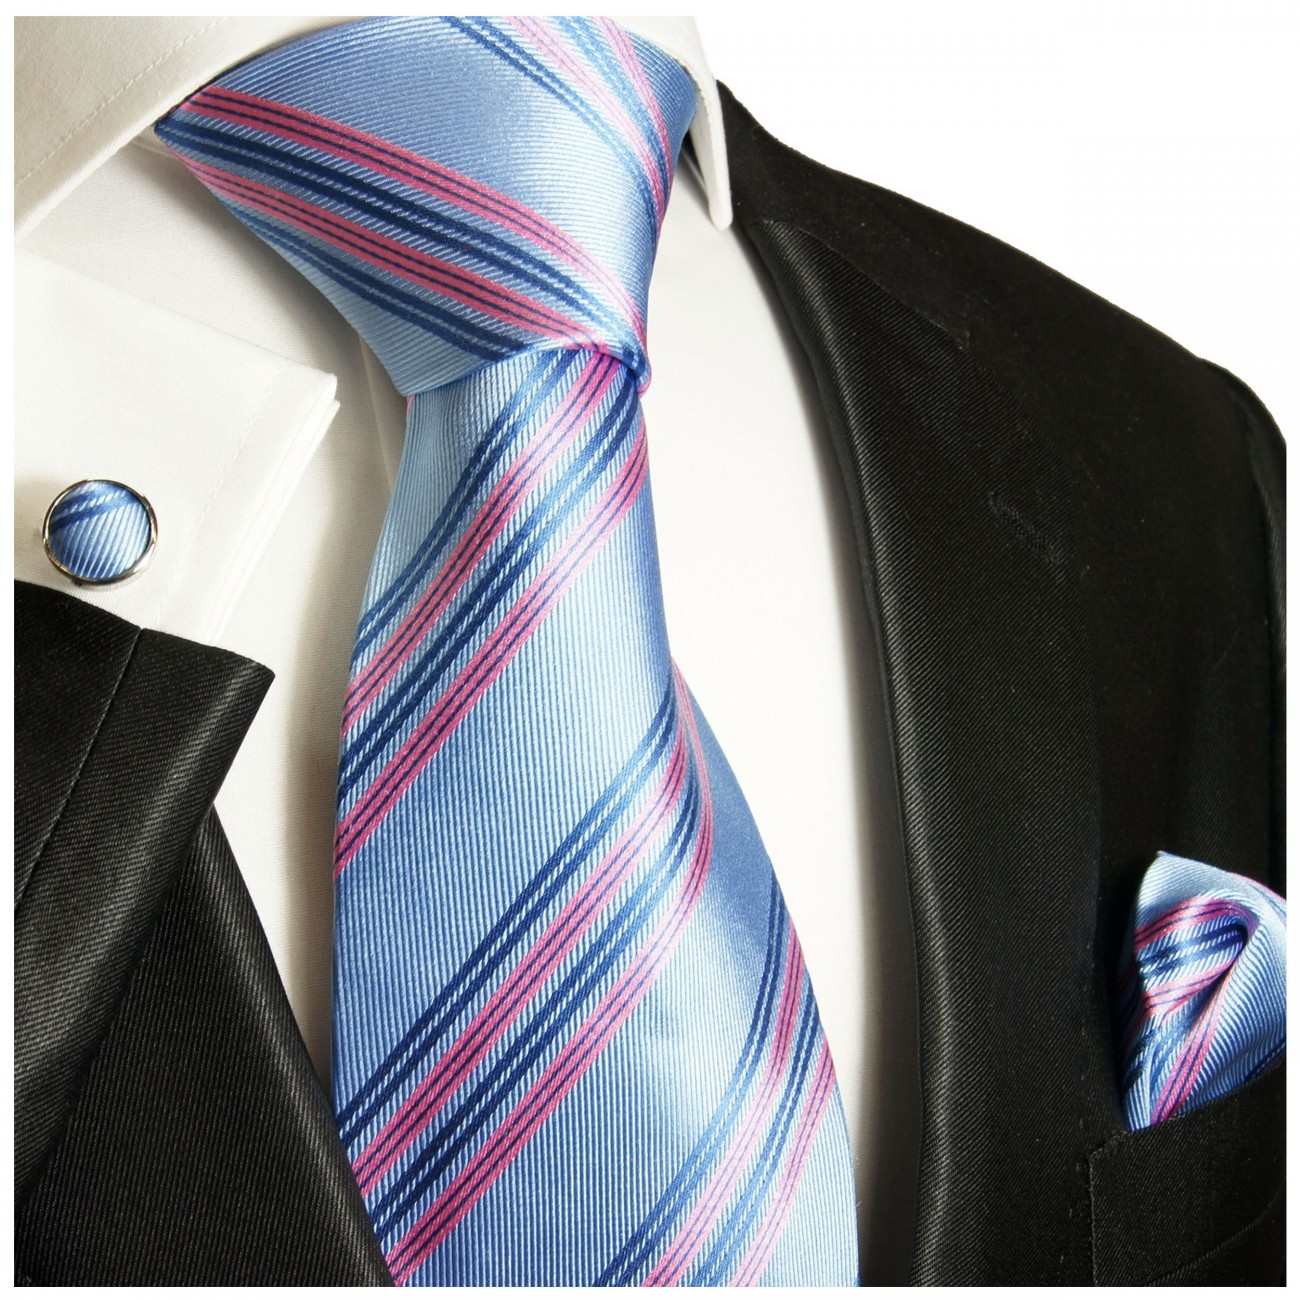 Krawatte hellblau pink gestreift mit Einstecktuch und Manschettenknöpfen 727